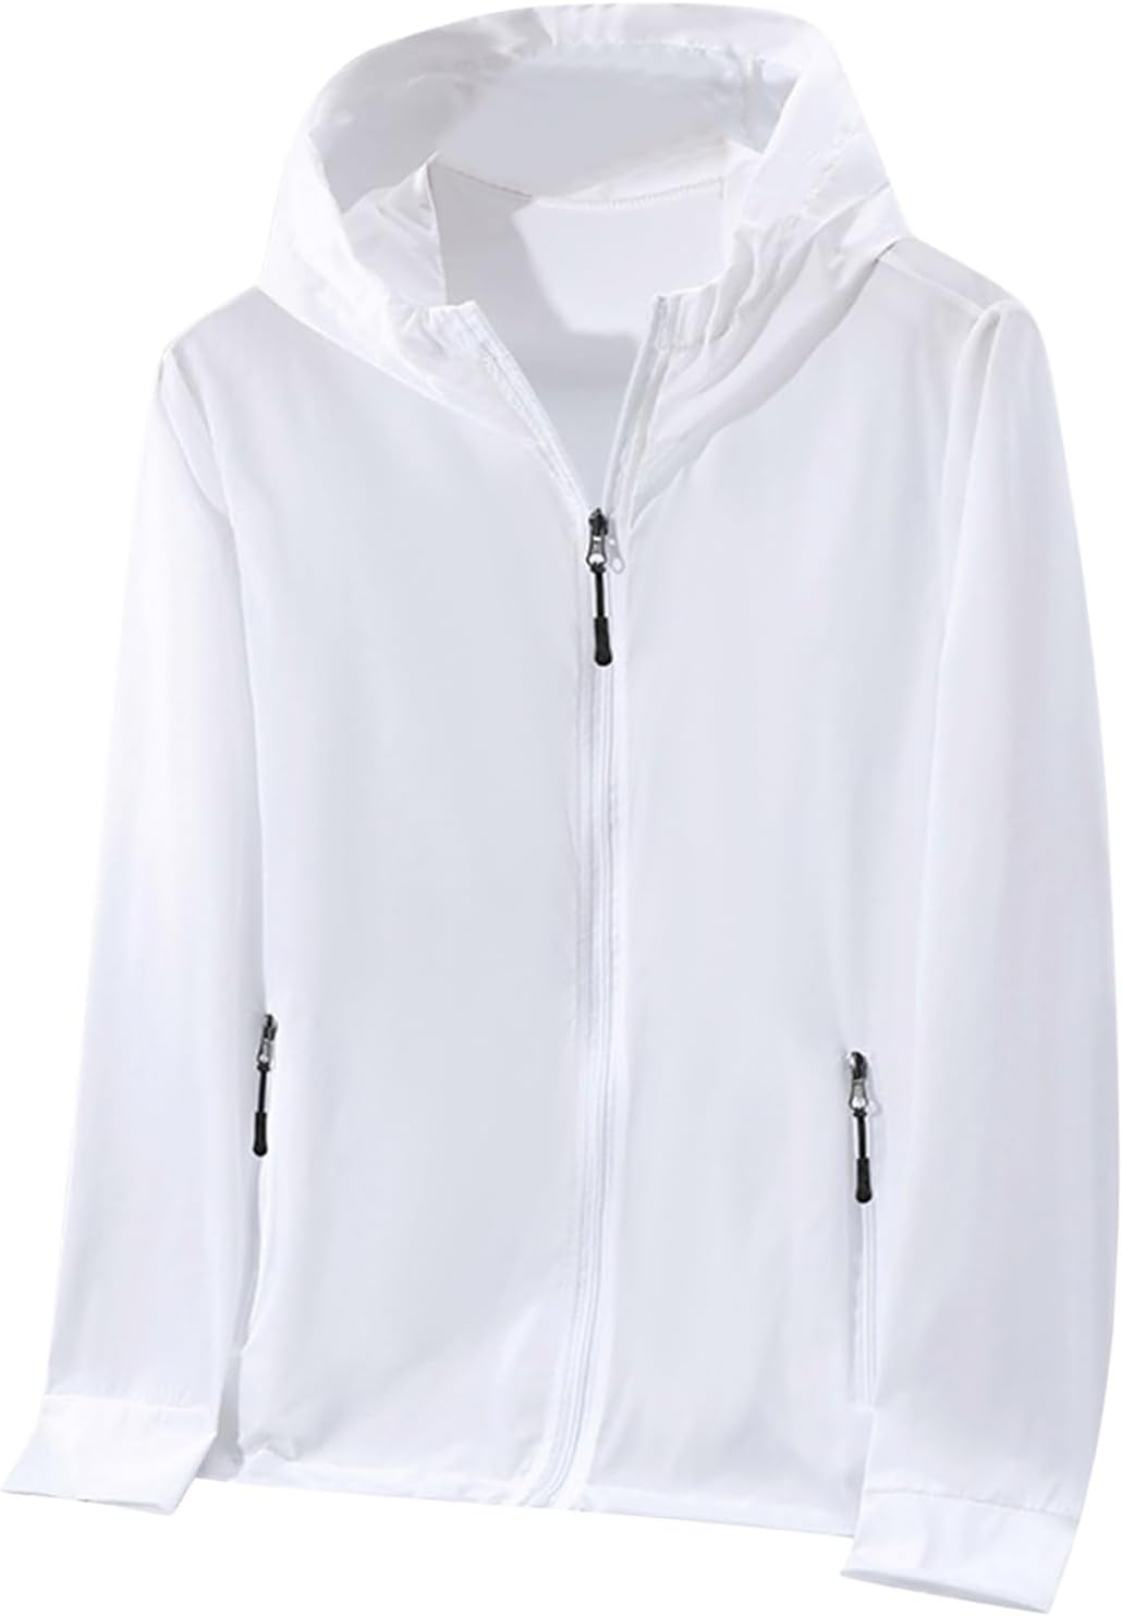 ホワイトラッシュガードレディース UVカットパーカー 冷感 長袖 水着 薄手通気性 フード付き紫外線対策 日焼け対策ウェア 女性適